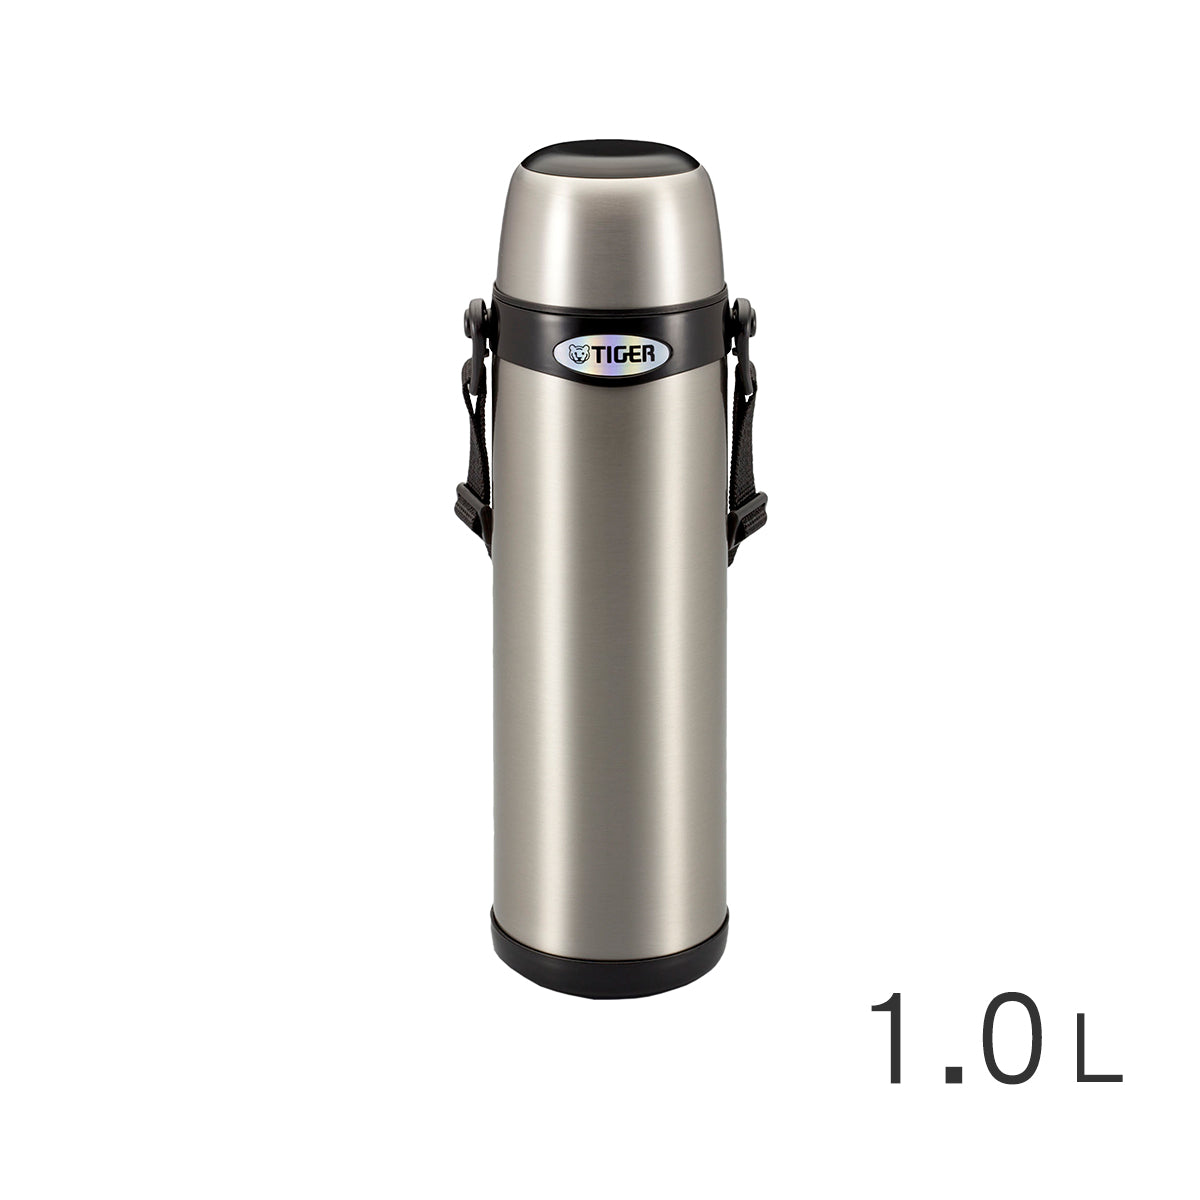 【背帶式】杯蓋型不鏽鋼真空保溫瓶1.0L (MBI-A100)